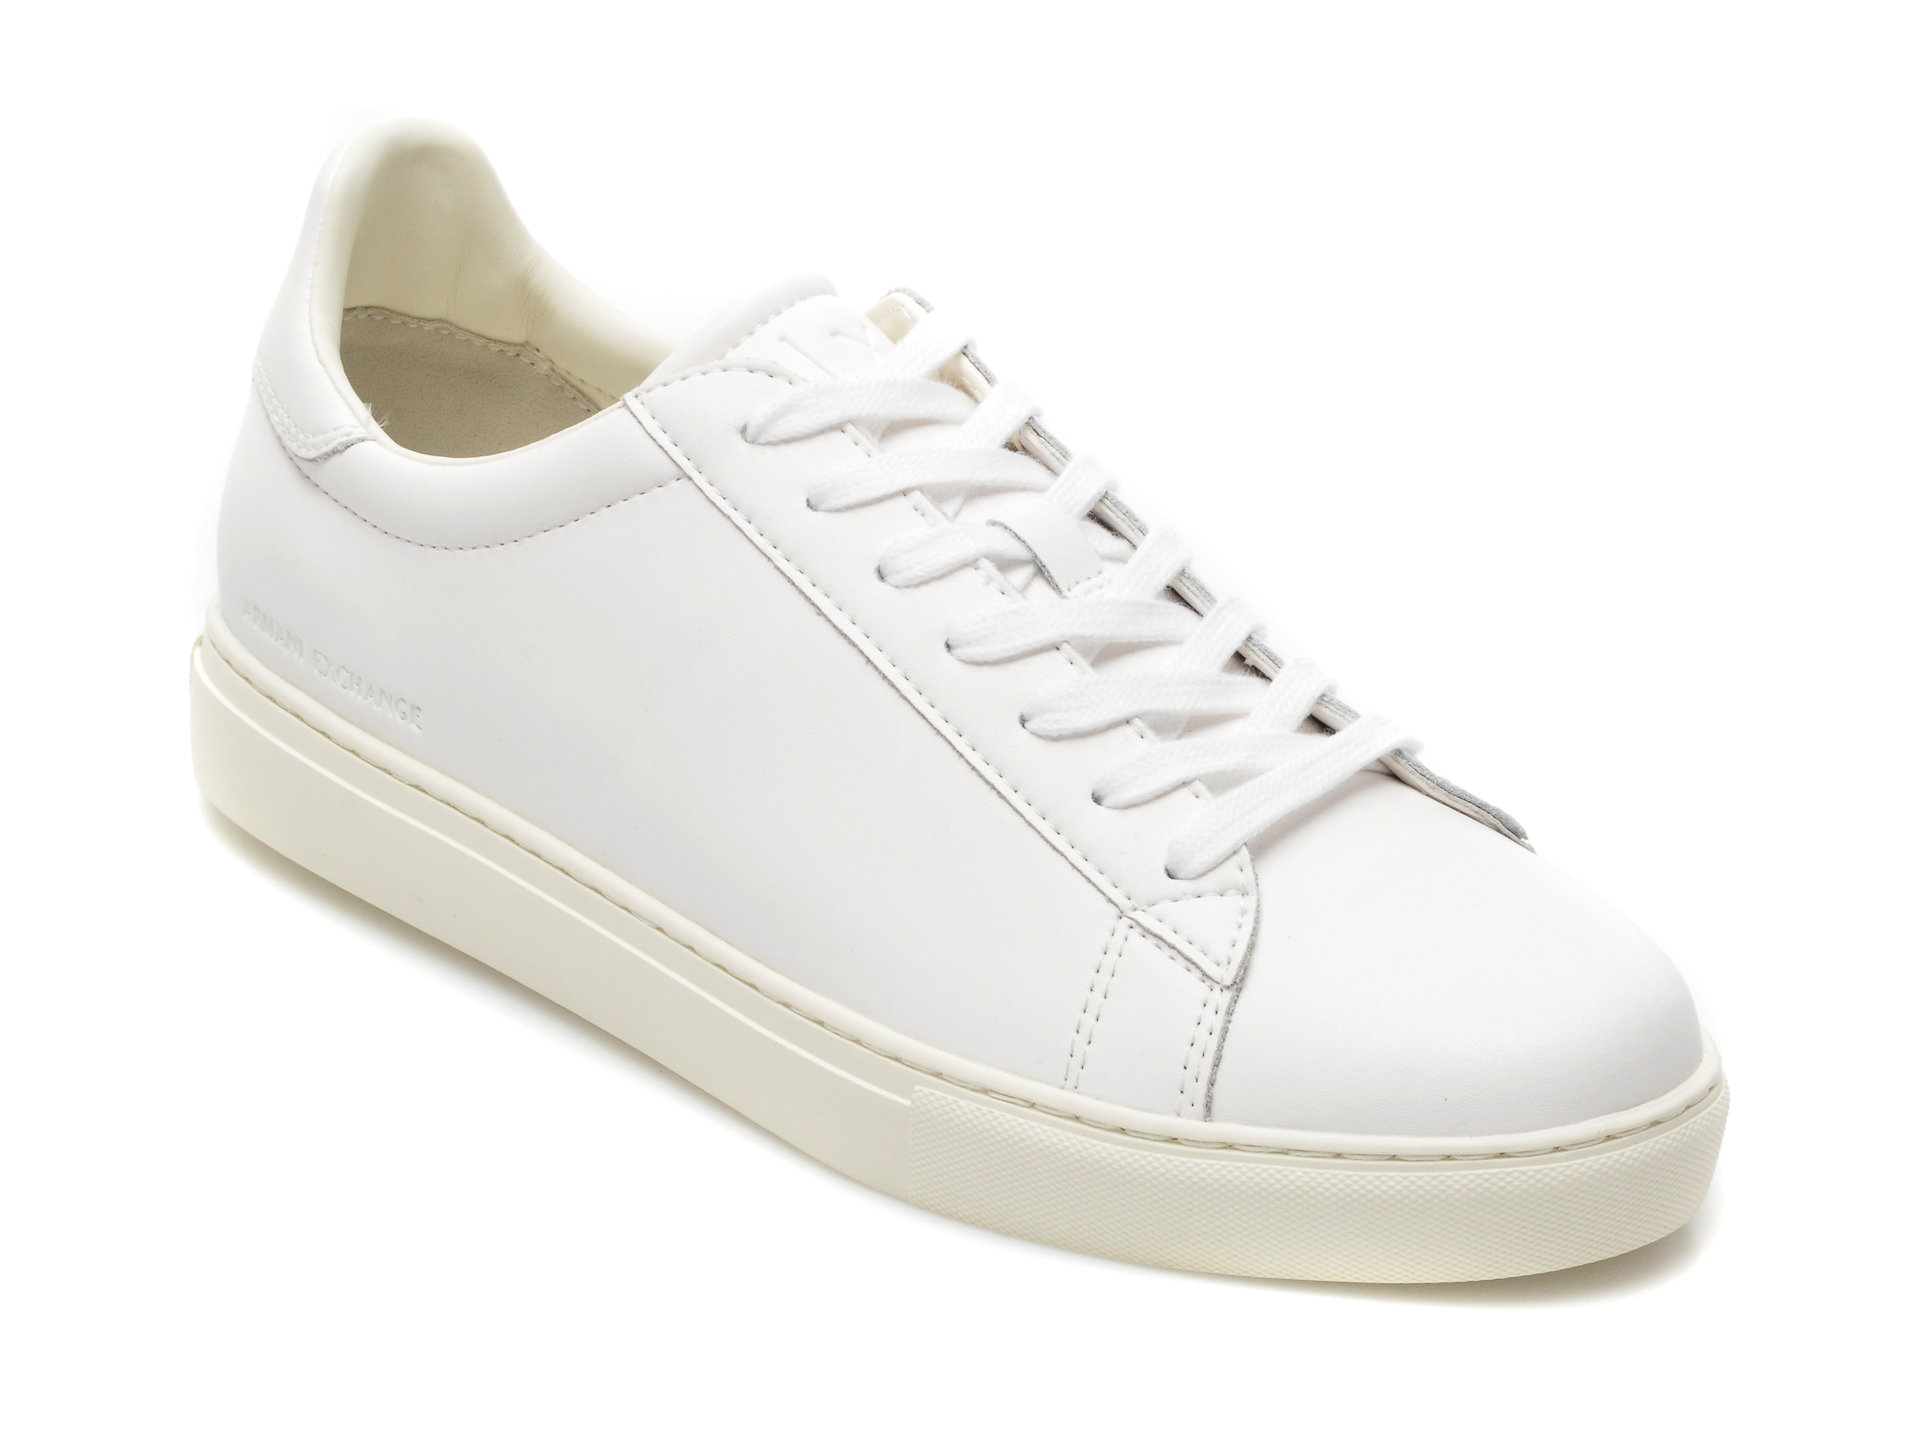 Pantofi sport ARMANI EXCHANGE albi, XUX001, din piele naturala Armani Exchange